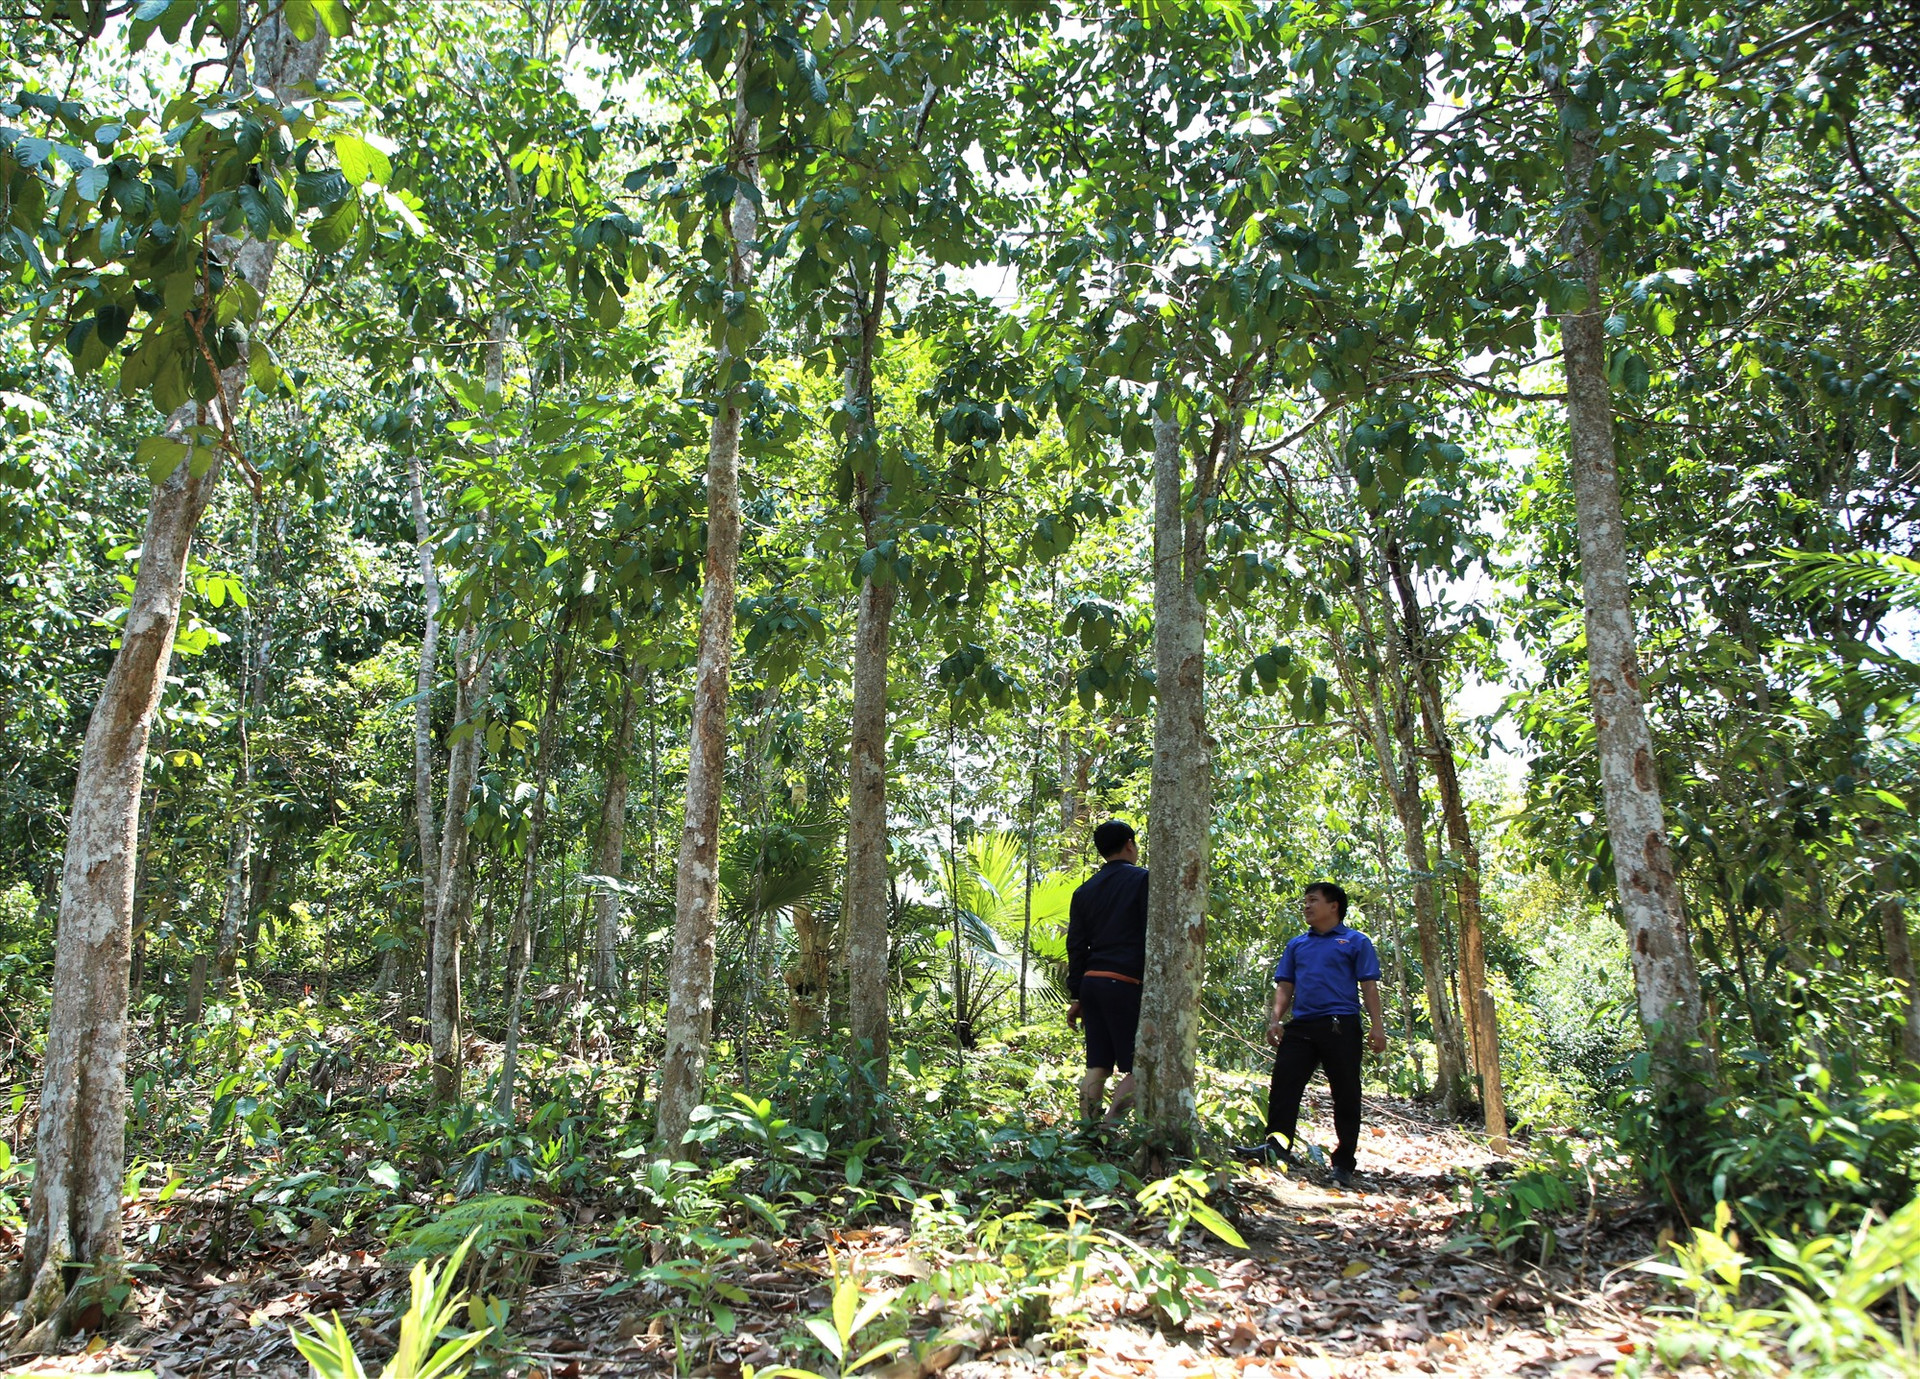 Chú trọng phát triển rừng trồng gỗ lớn, nhiều năm qua, Nam Giang khuyến khích người dân chuyển đổi phương thức sản xuất mới gắn với sinh kế bền vững. Ảnh: ALĂNG NGƯỚC